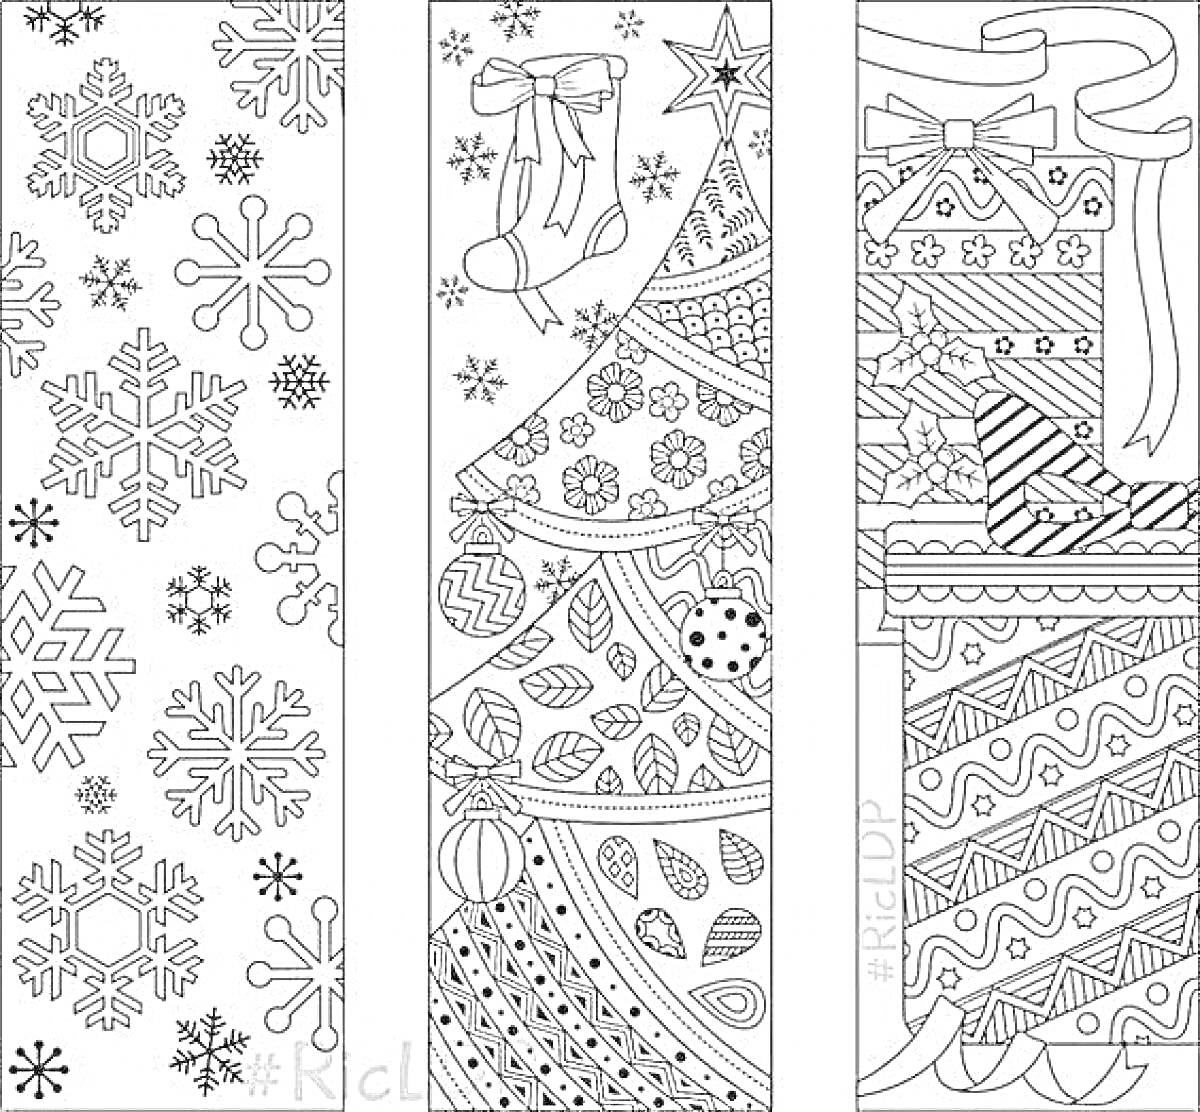 Раскраска закладки новогодние с элементами снежинок, елки с украшениями, подарков